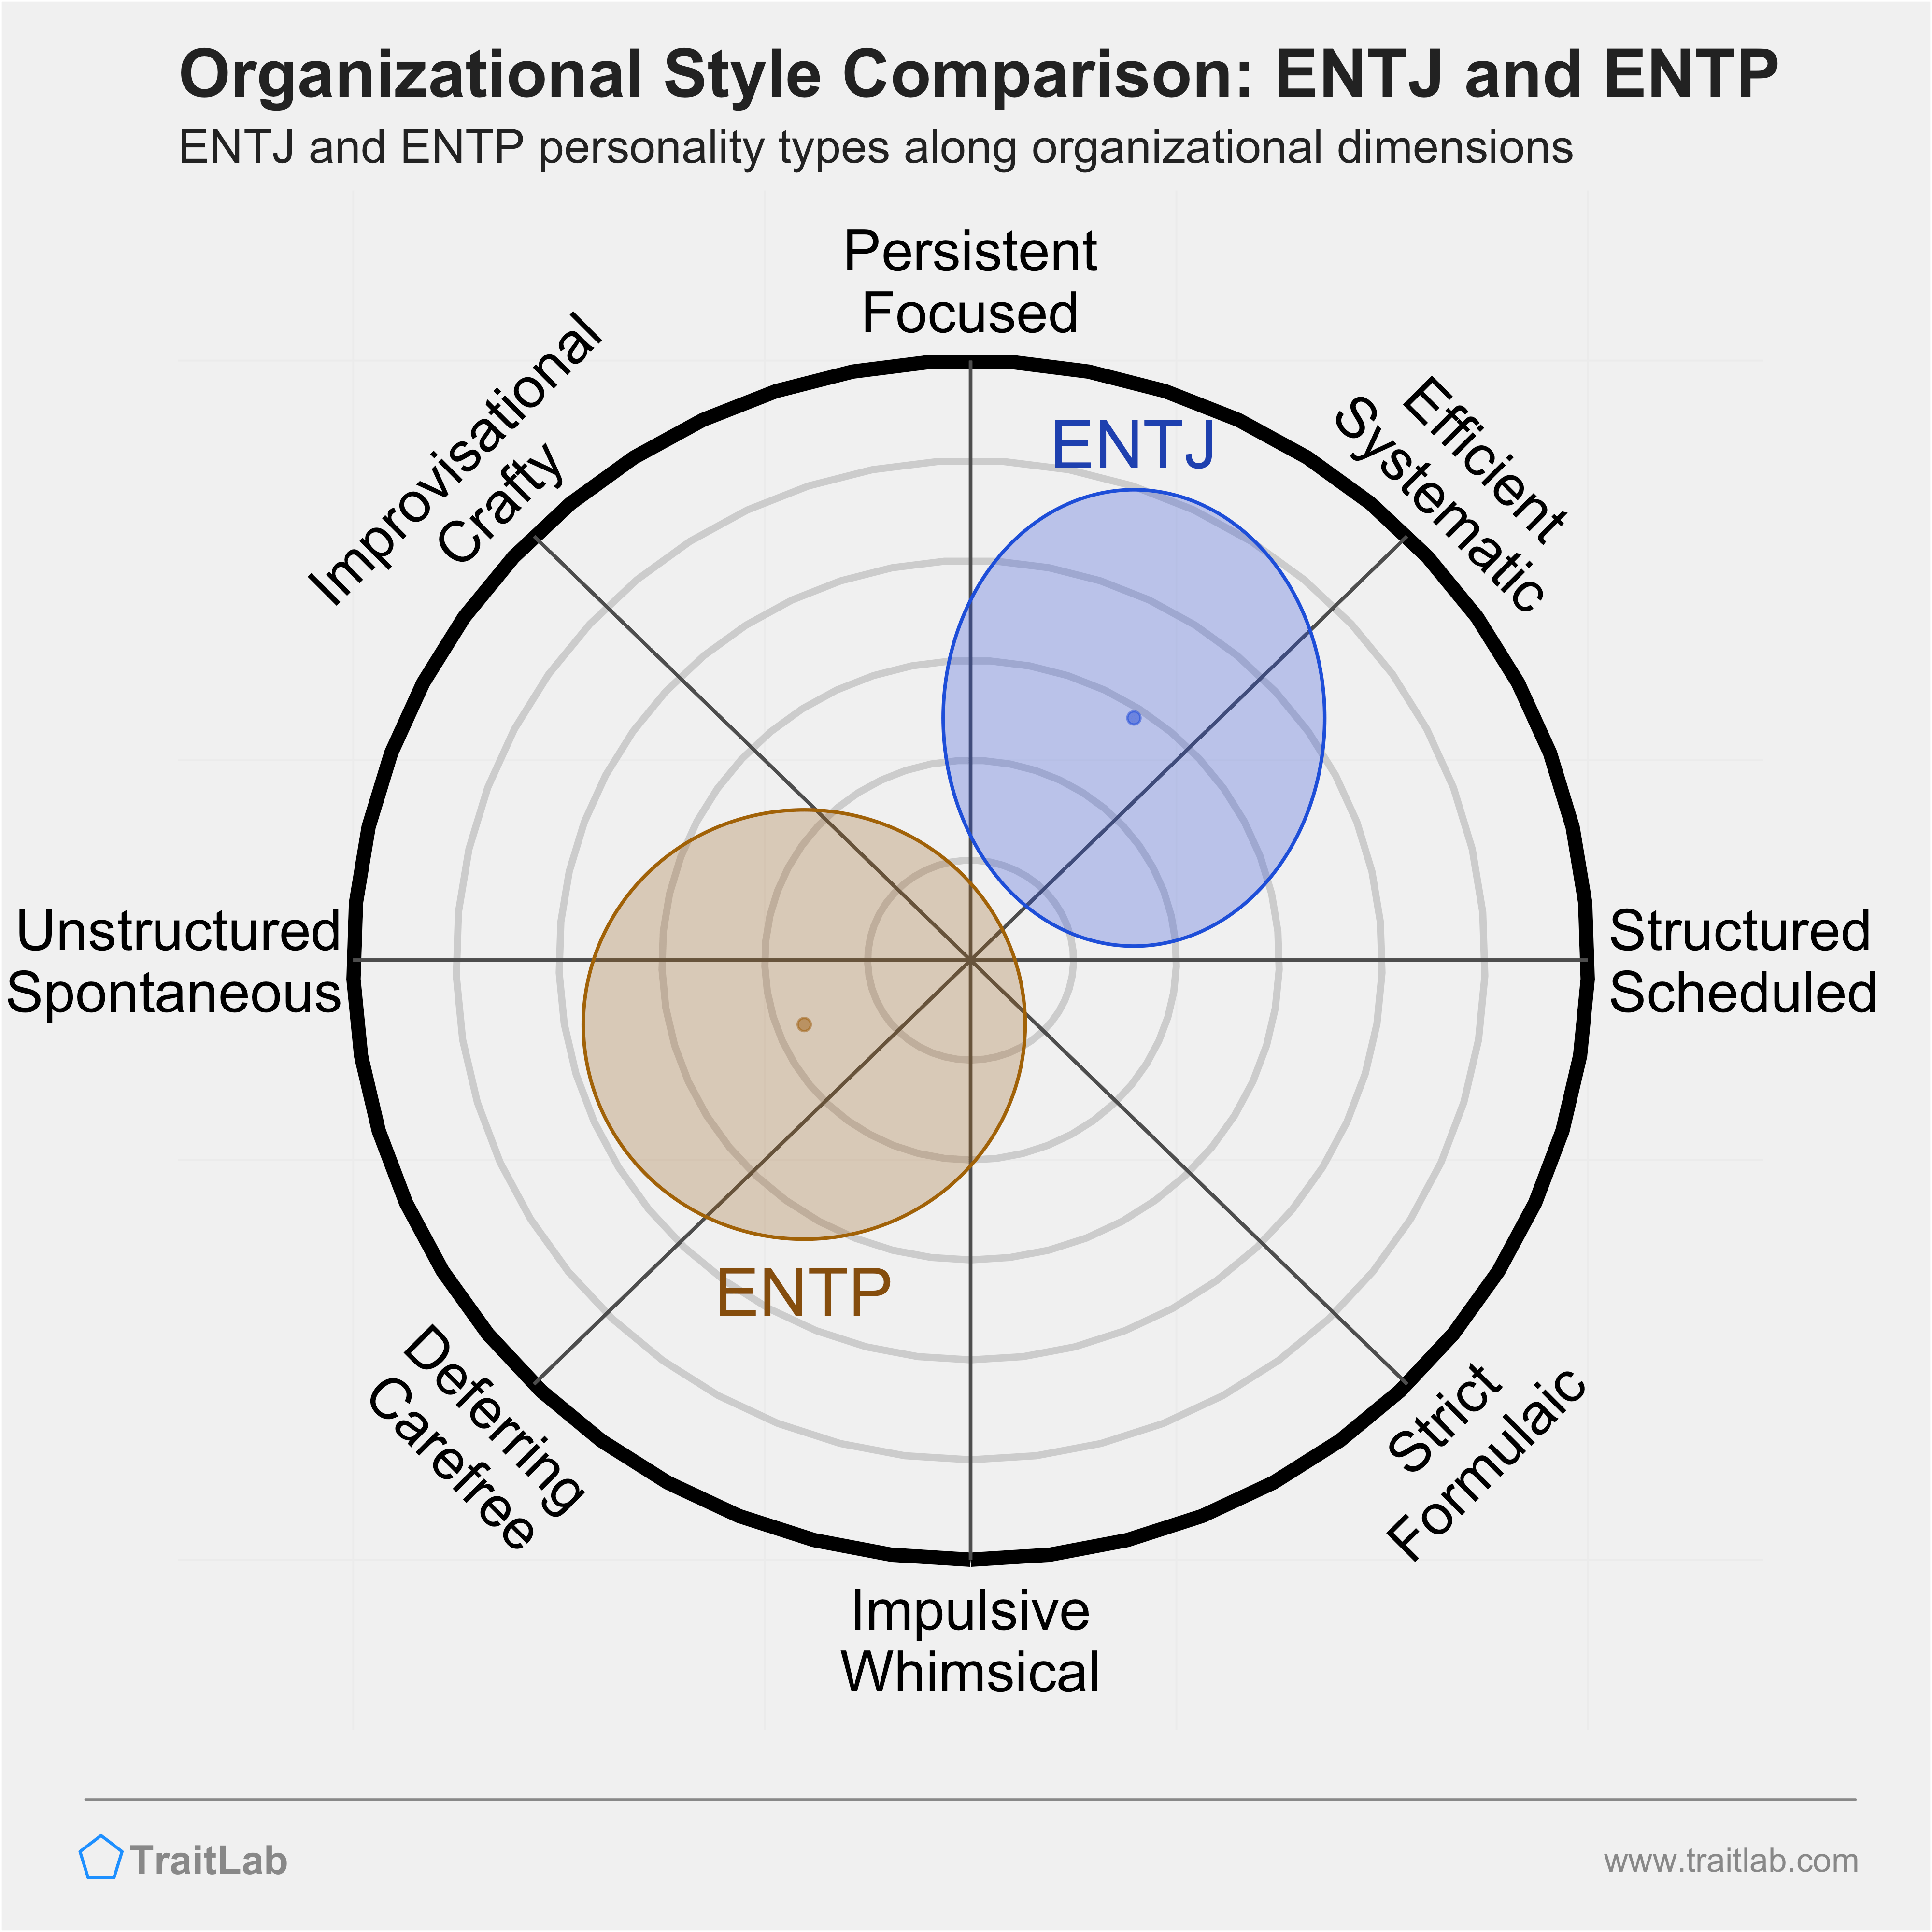 ENTJ and ENTP comparison across organizational dimensions